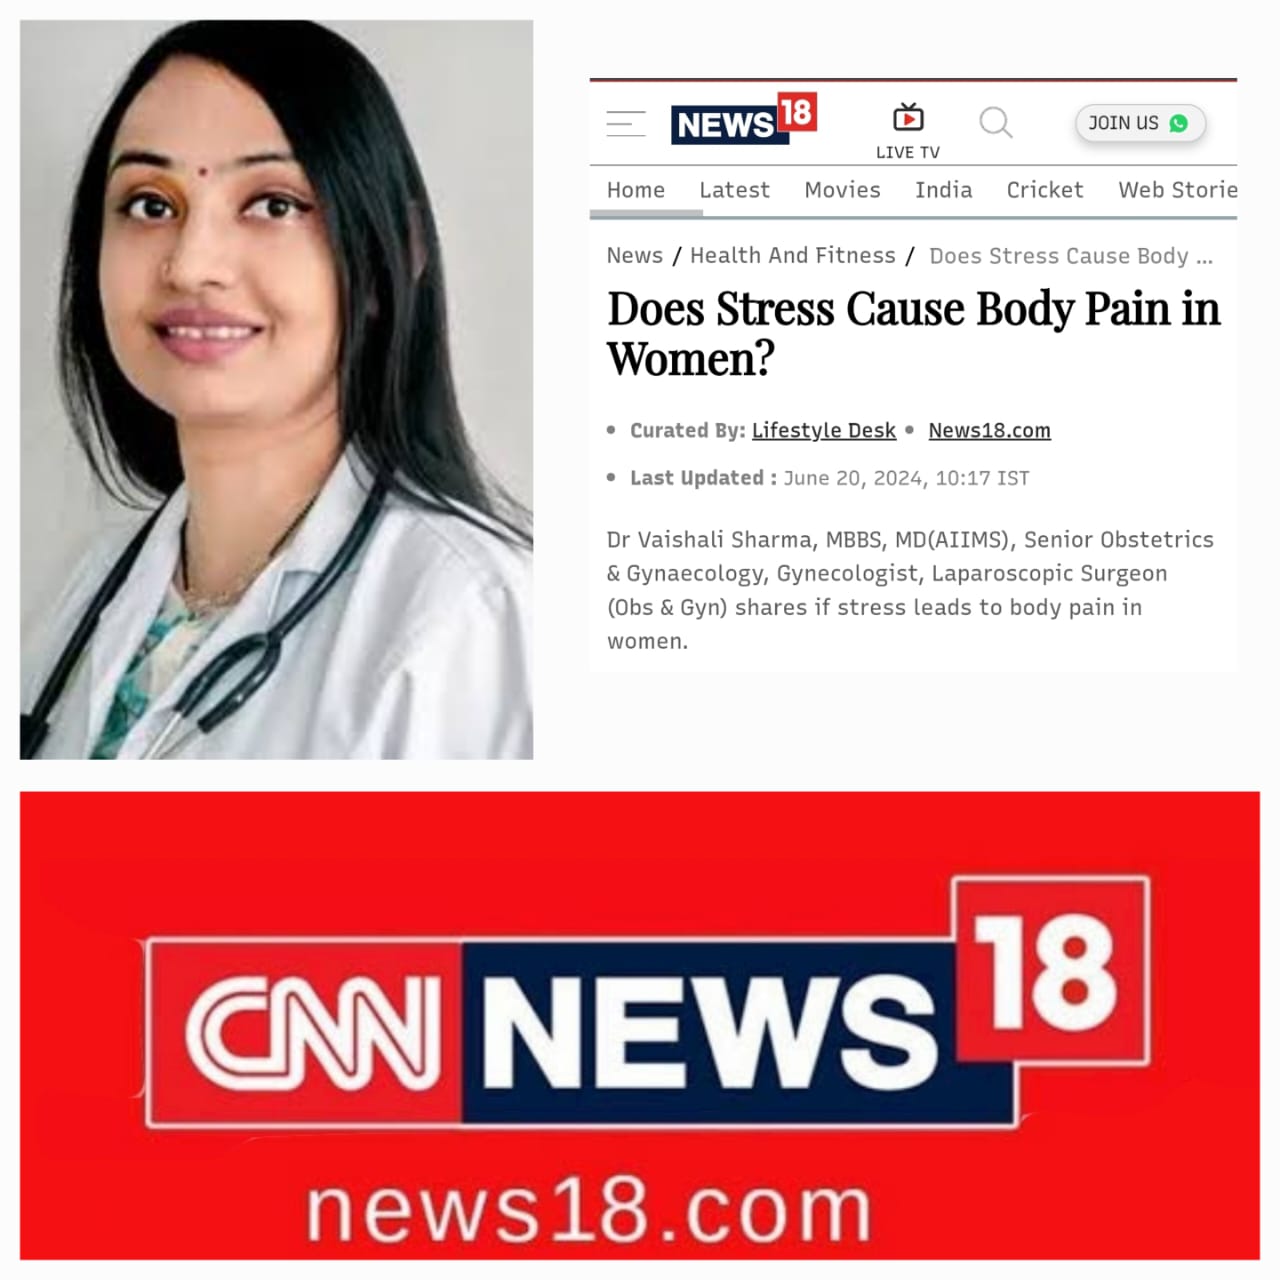 CNN-News18 With Dr Vaishali Sharma MD (AIIMS)